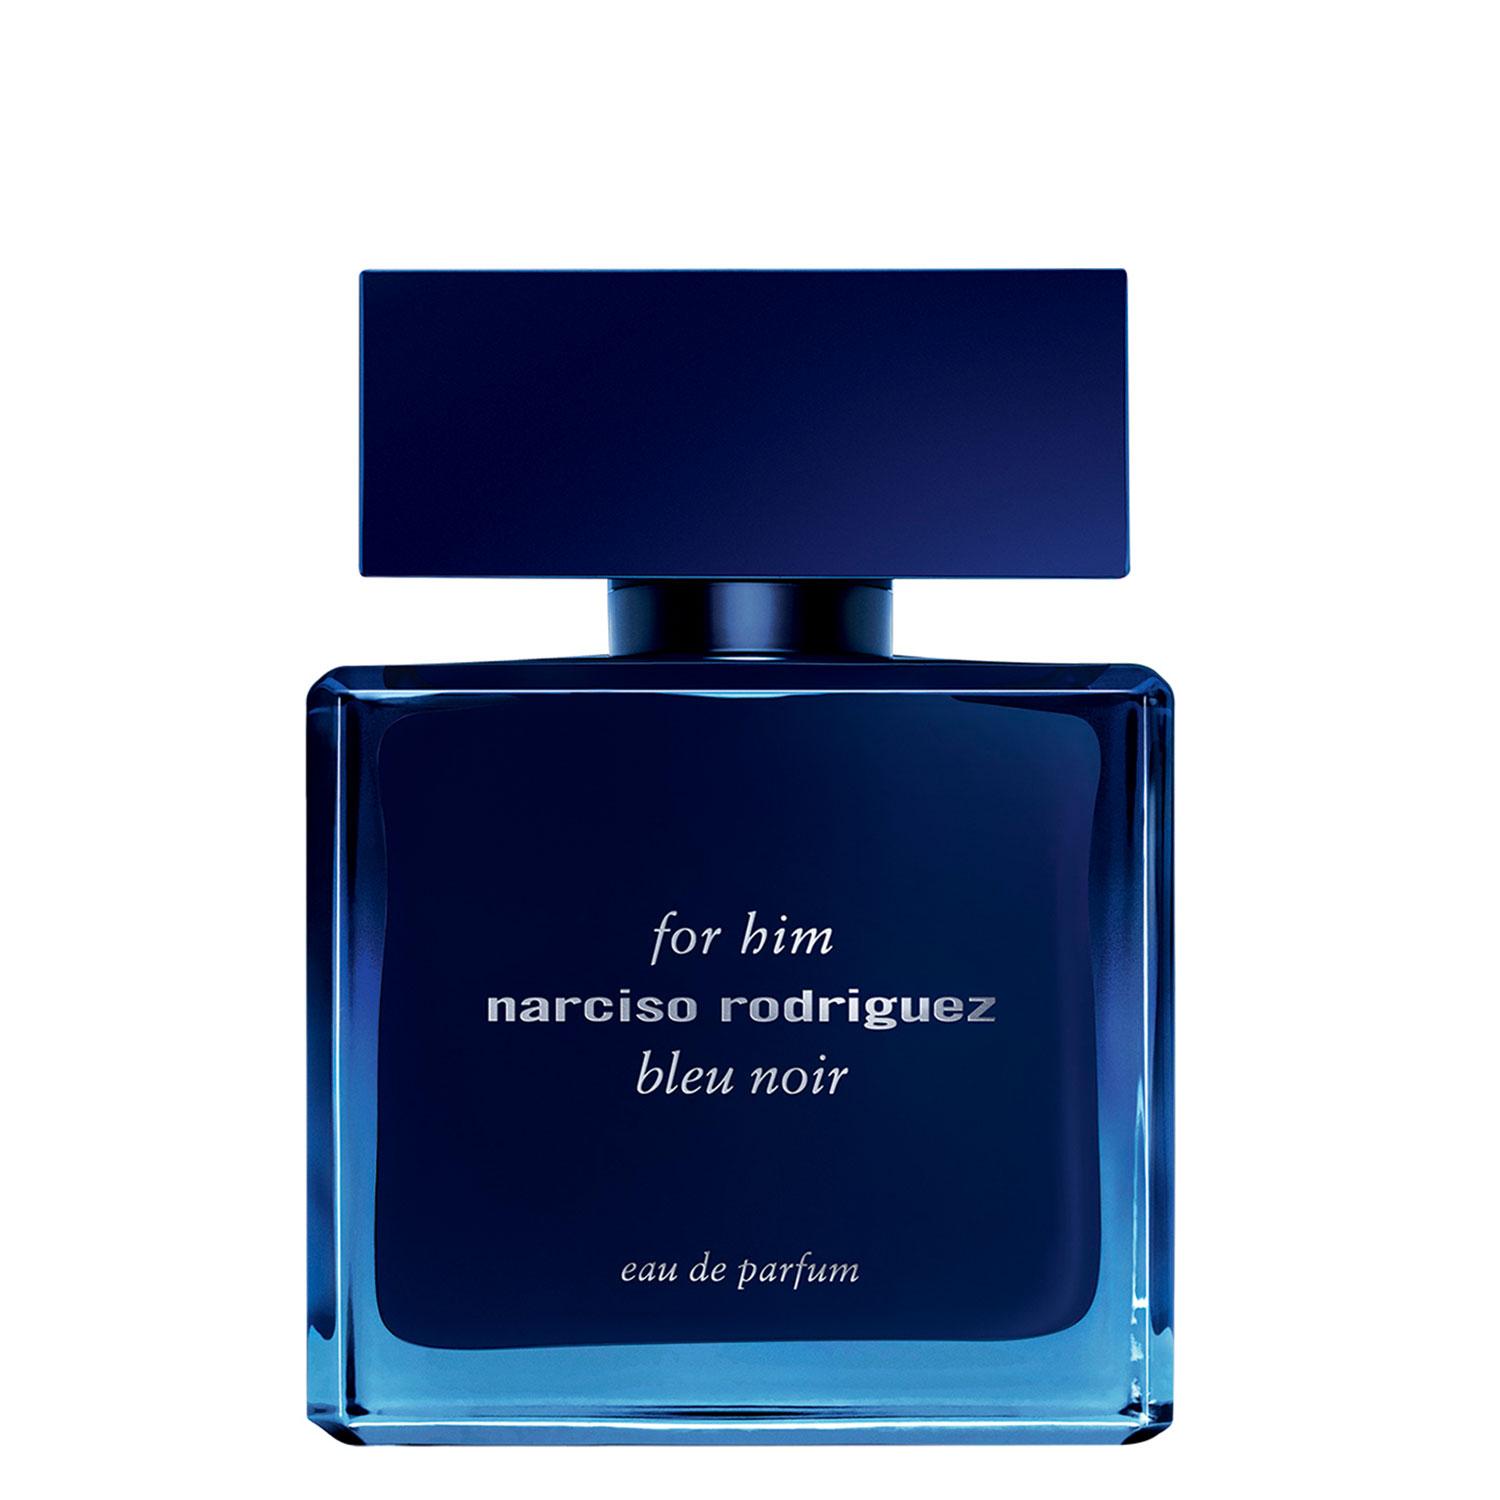 Narciso - For Him Bleu Noir Eau de Parfum